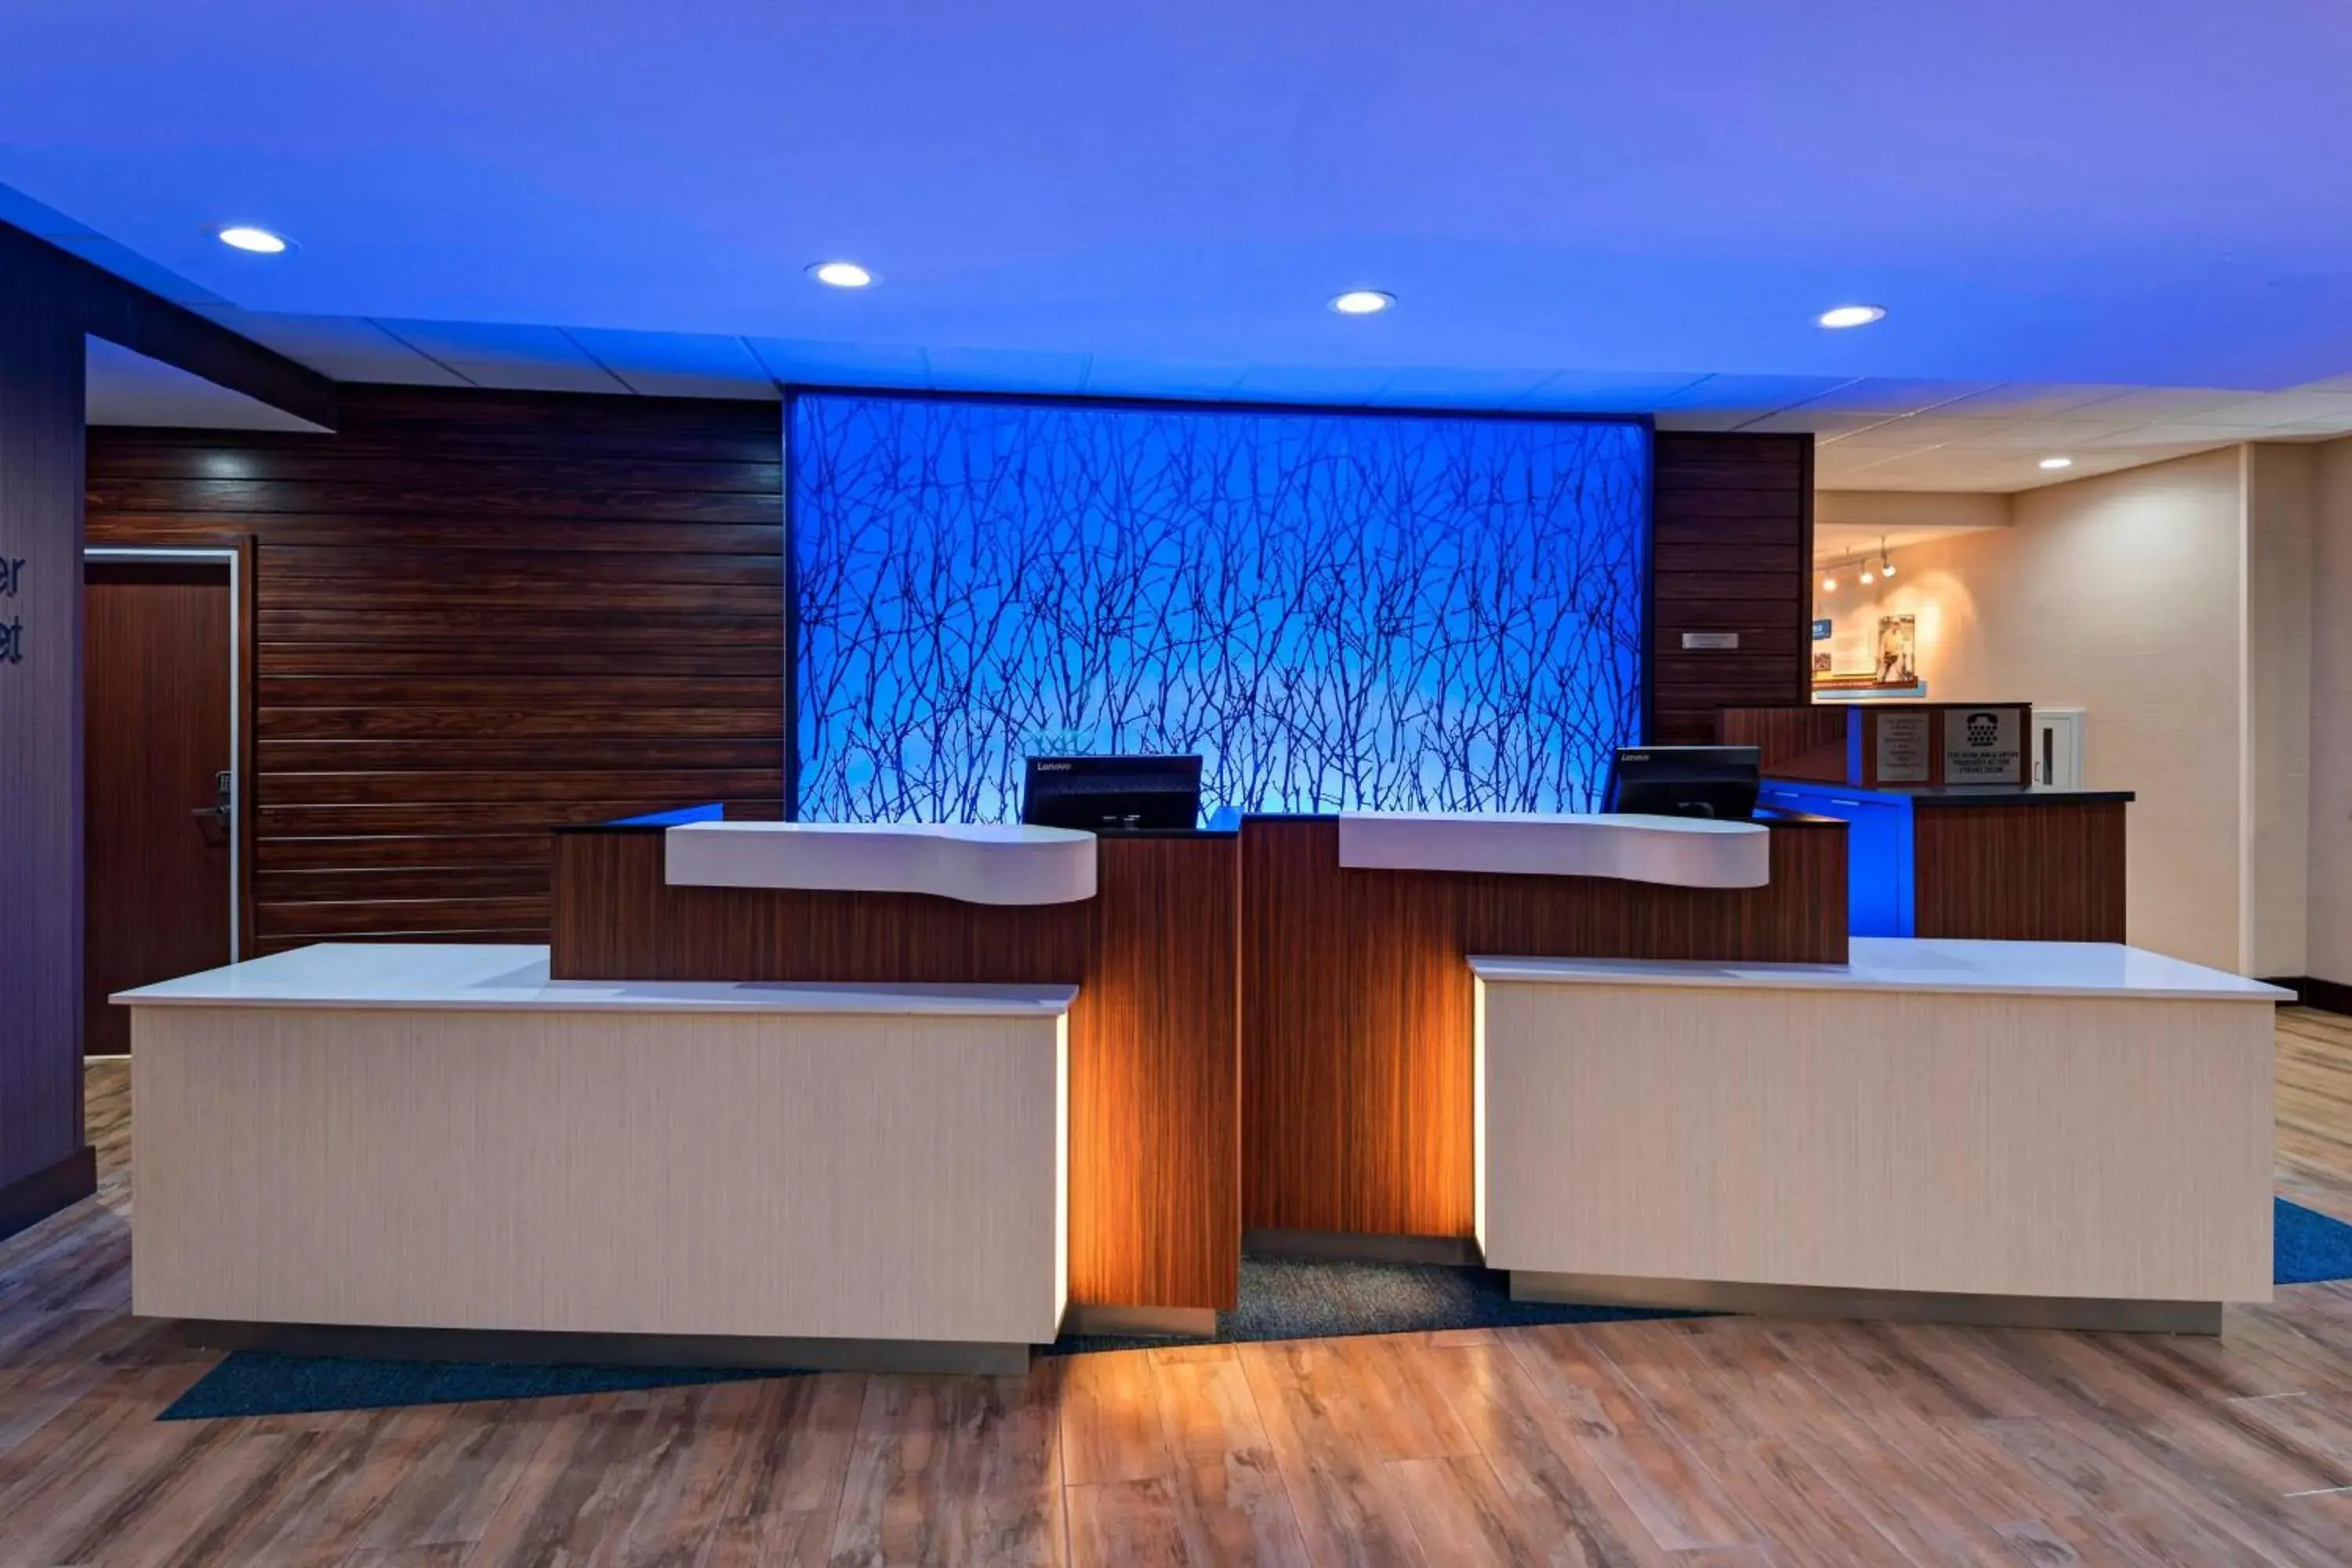 Lobby or reception in Fairfield Inn & Suites by Marriott Austin Buda